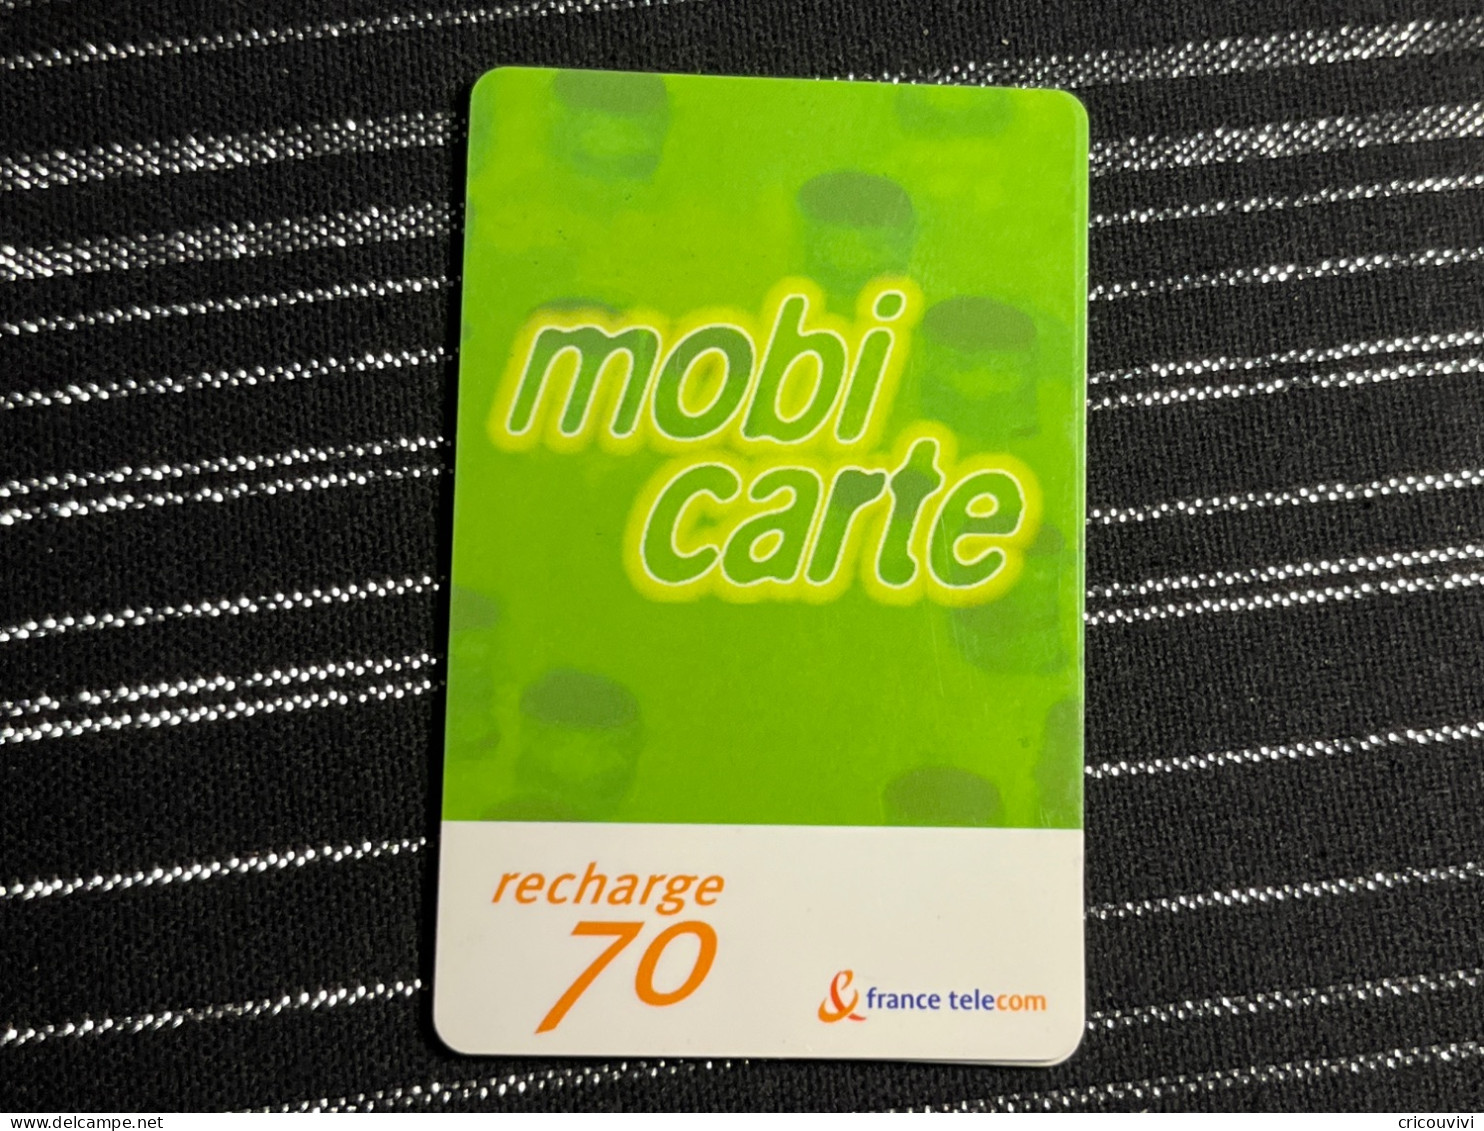 Mobicarte Pu81D - Cellphone Cards (refills)